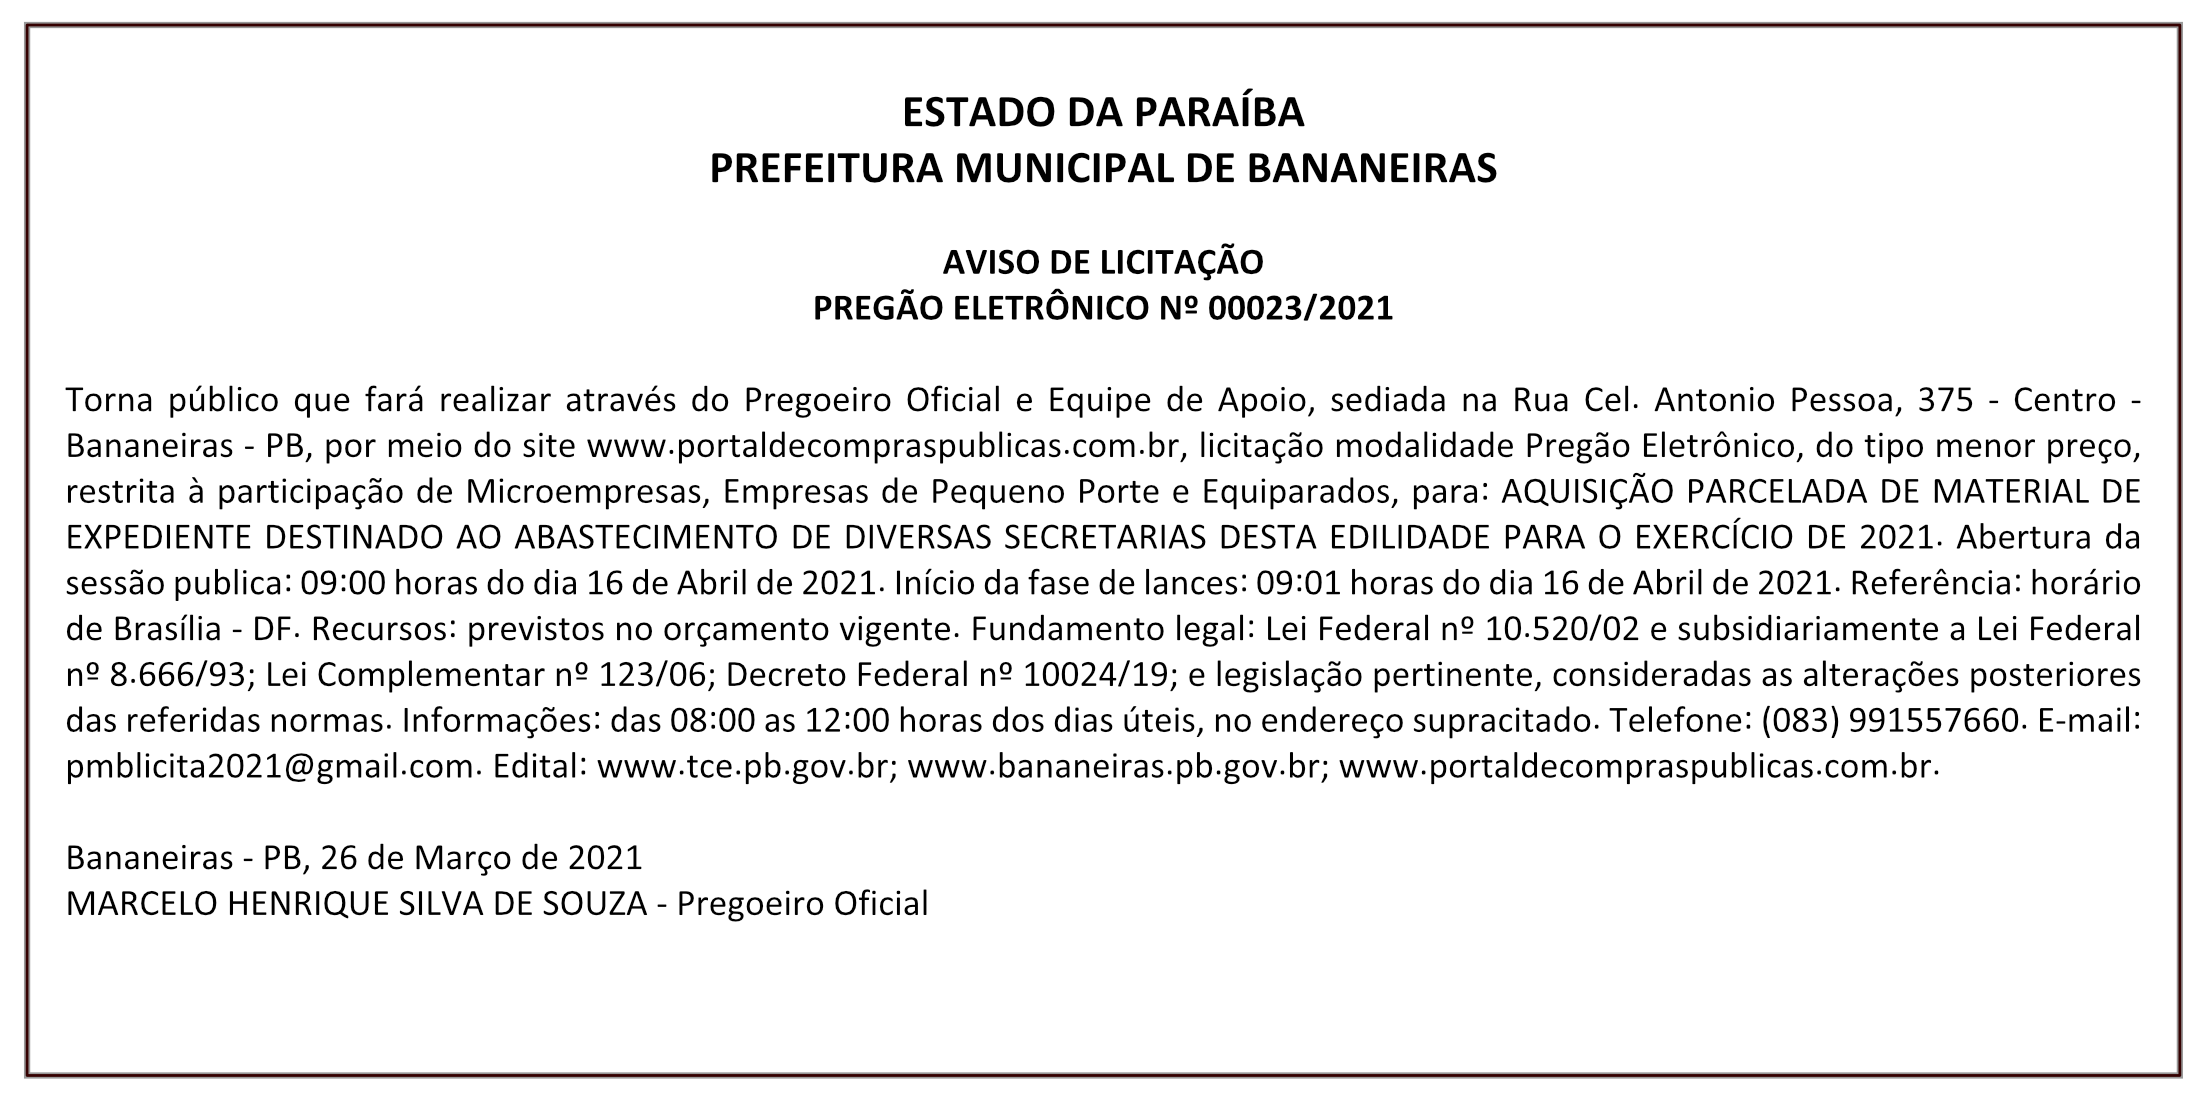 PREFEITURA MUNICIPAL DE BANANEIRAS – AVISO DE LICITAÇÃO – PREGÃO ELETRÔNICO Nº 00023/2021